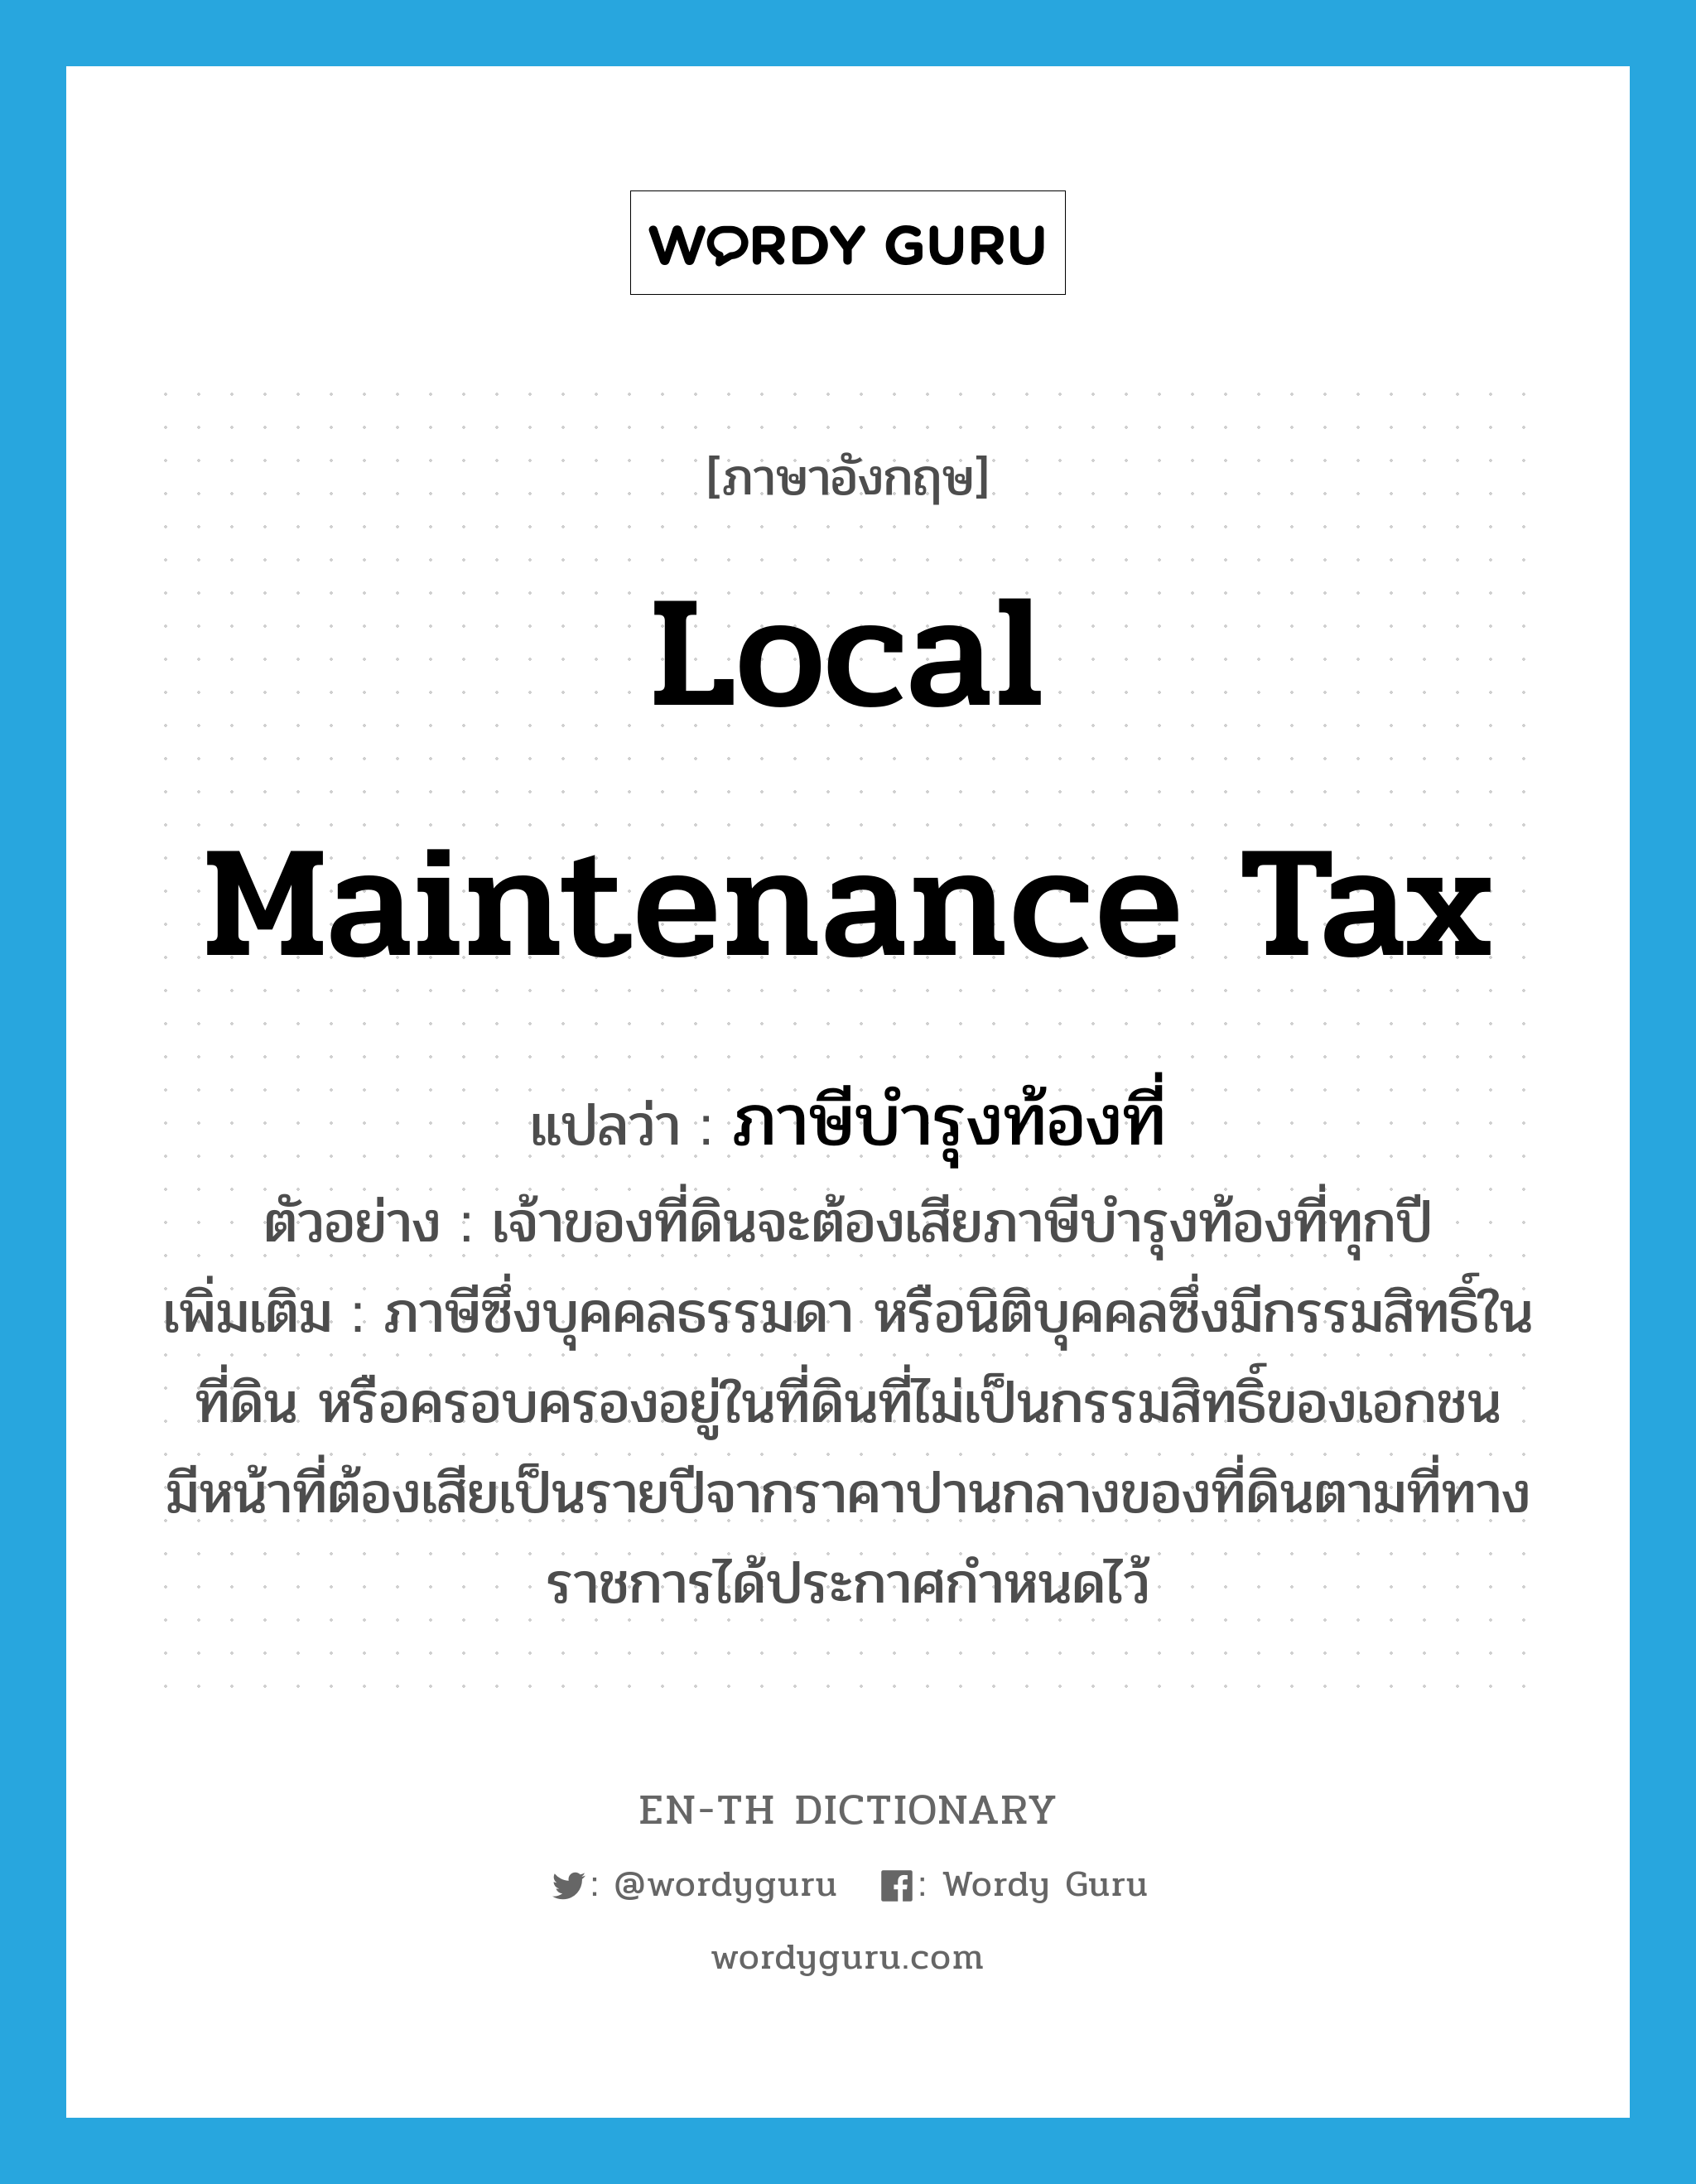 local maintenance tax แปลว่า?, คำศัพท์ภาษาอังกฤษ local maintenance tax แปลว่า ภาษีบำรุงท้องที่ ประเภท N ตัวอย่าง เจ้าของที่ดินจะต้องเสียภาษีบำรุงท้องที่ทุกปี เพิ่มเติม ภาษีซึ่งบุคคลธรรมดา หรือนิติบุคคลซึ่งมีกรรมสิทธิ์ในที่ดิน หรือครอบครองอยู่ในที่ดินที่ไม่เป็นกรรมสิทธิ์ของเอกชน มีหน้าที่ต้องเสียเป็นรายปีจากราคาปานกลางของที่ดินตามที่ทางราชการได้ประกาศกำหนดไว้ หมวด N